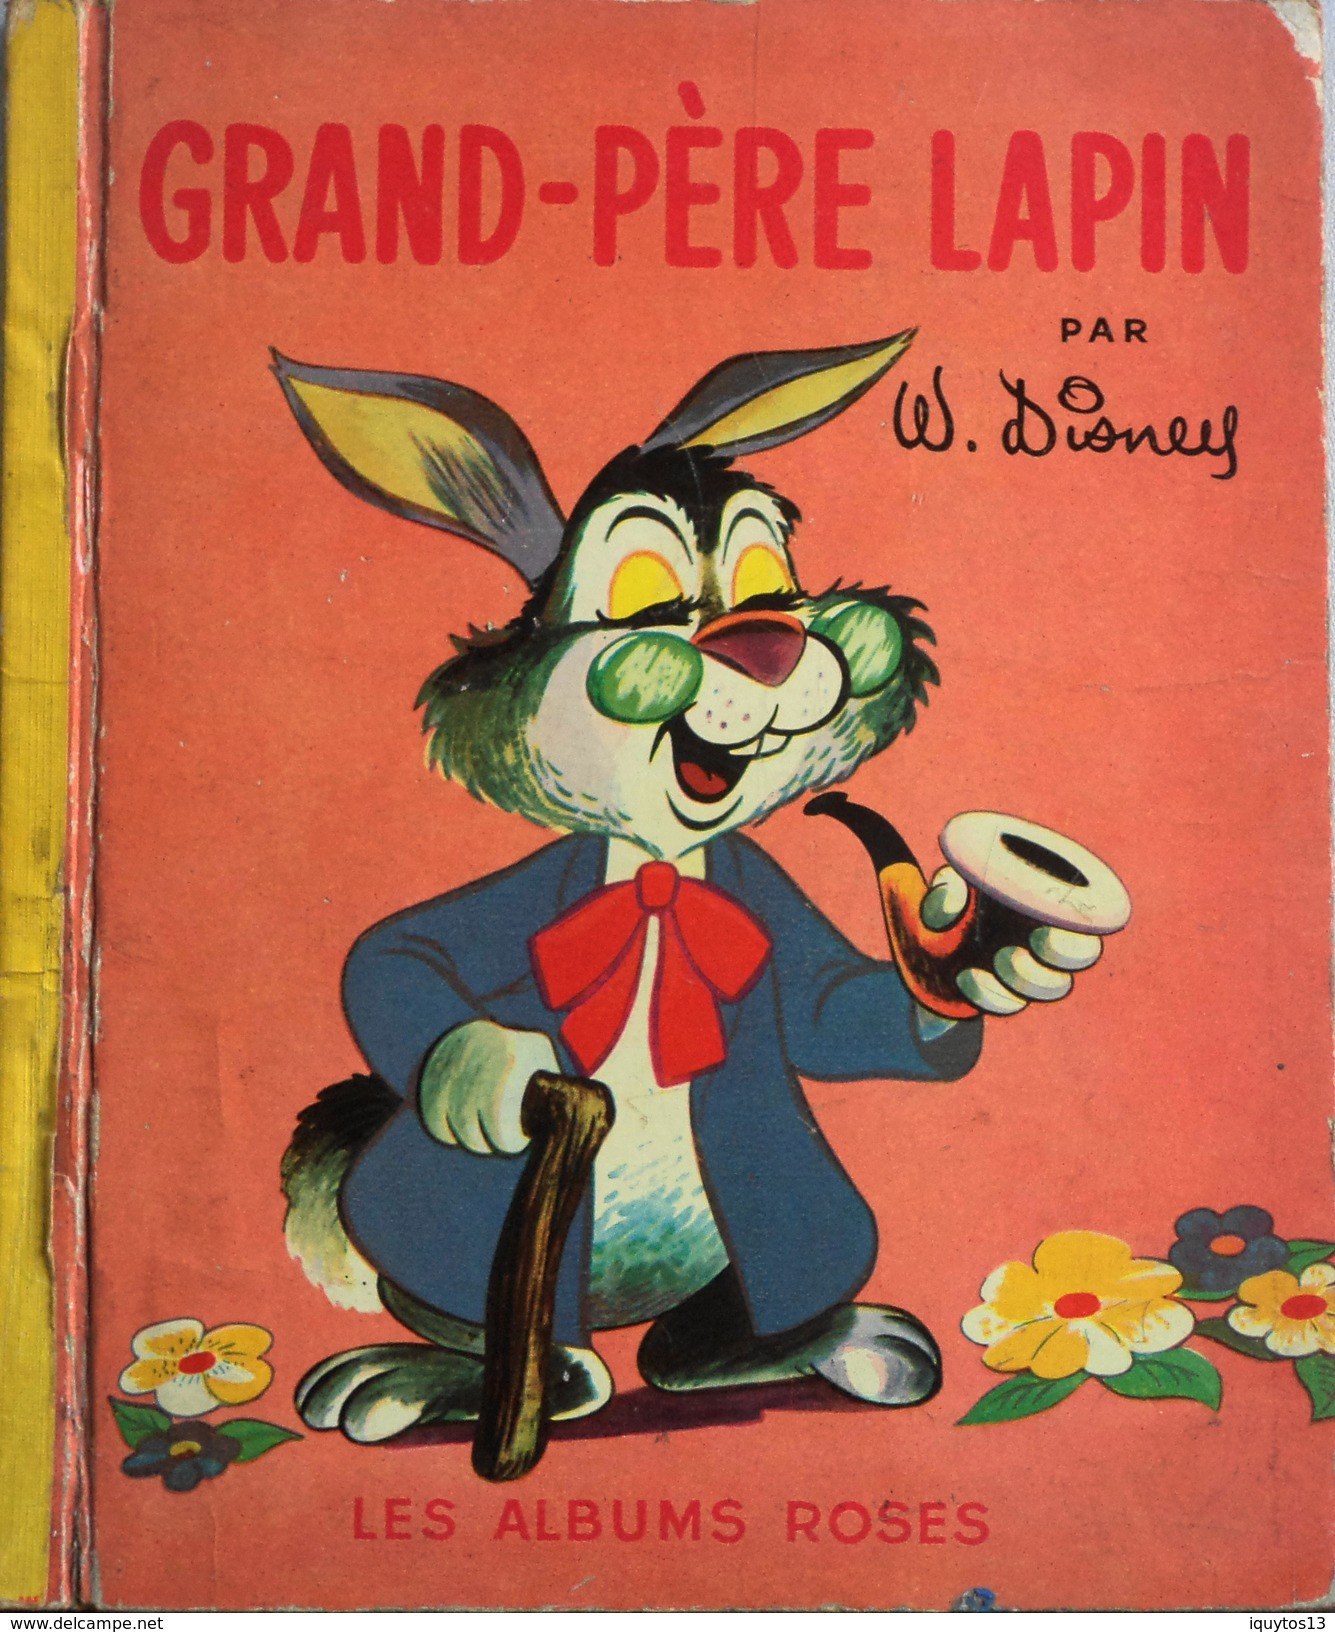 GRAND-PERE LAPIN Par W. DISNEY - Les Albums Roses - Daté 9 - 1952 - BE - Disney